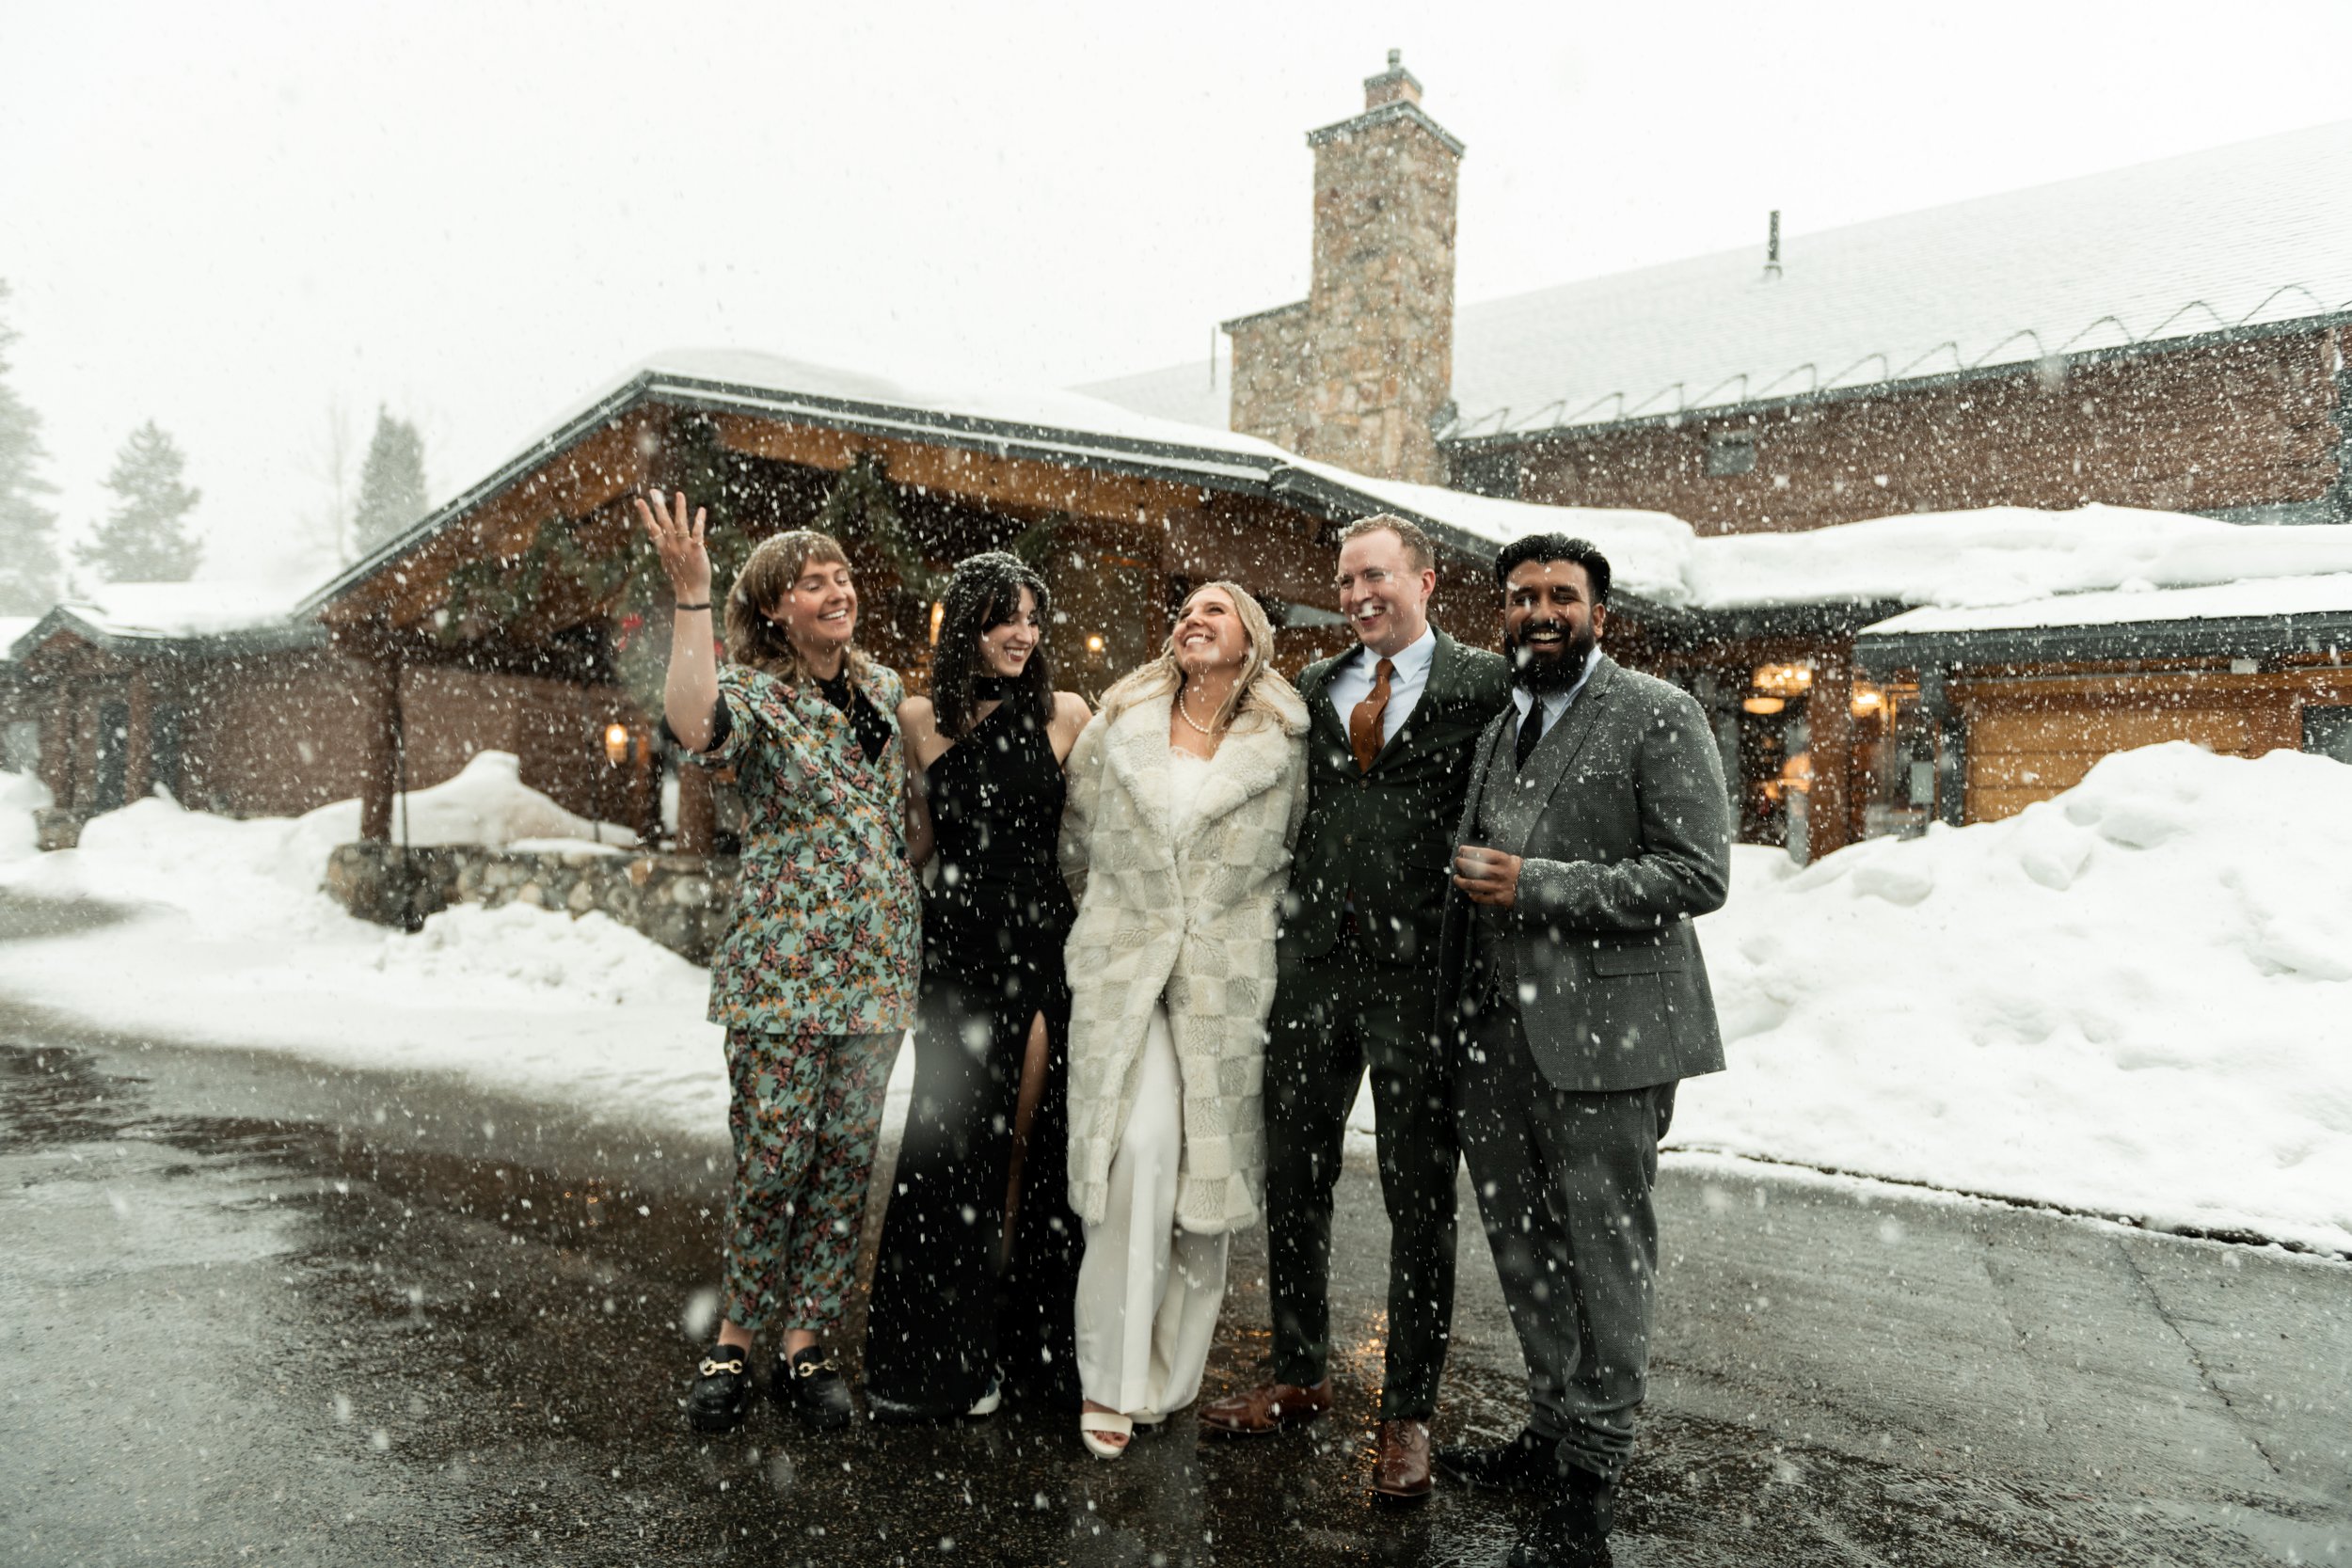 keystone ranch wedding ski elopement colorado winter